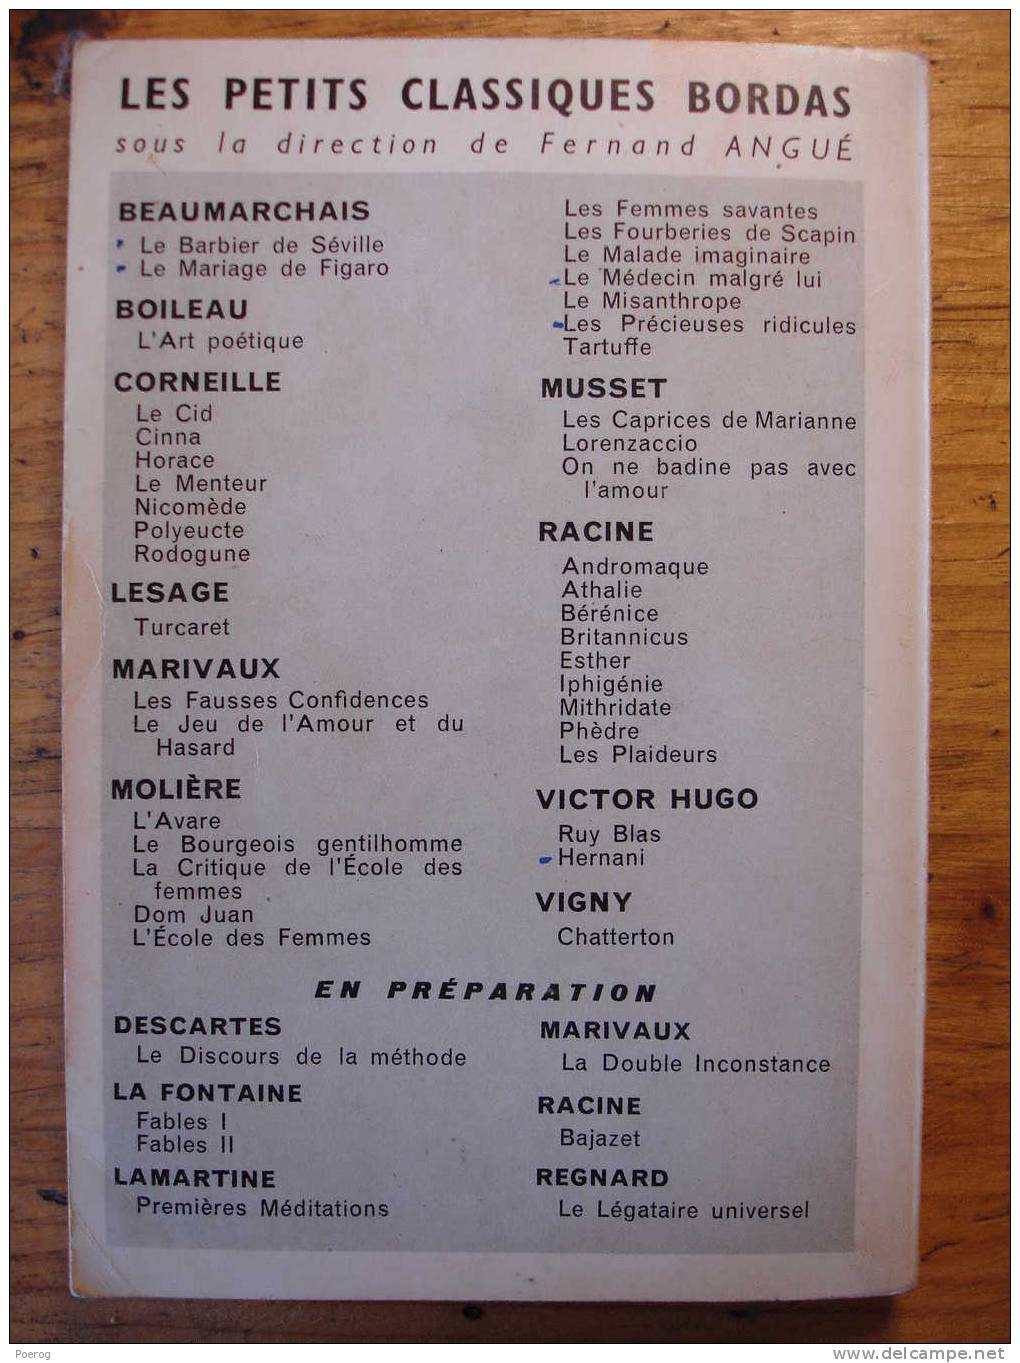 RUY BLAS - VICTOR HUGO - PETITS CLASSIQUES BORDAS - 1964 - Auteurs Français